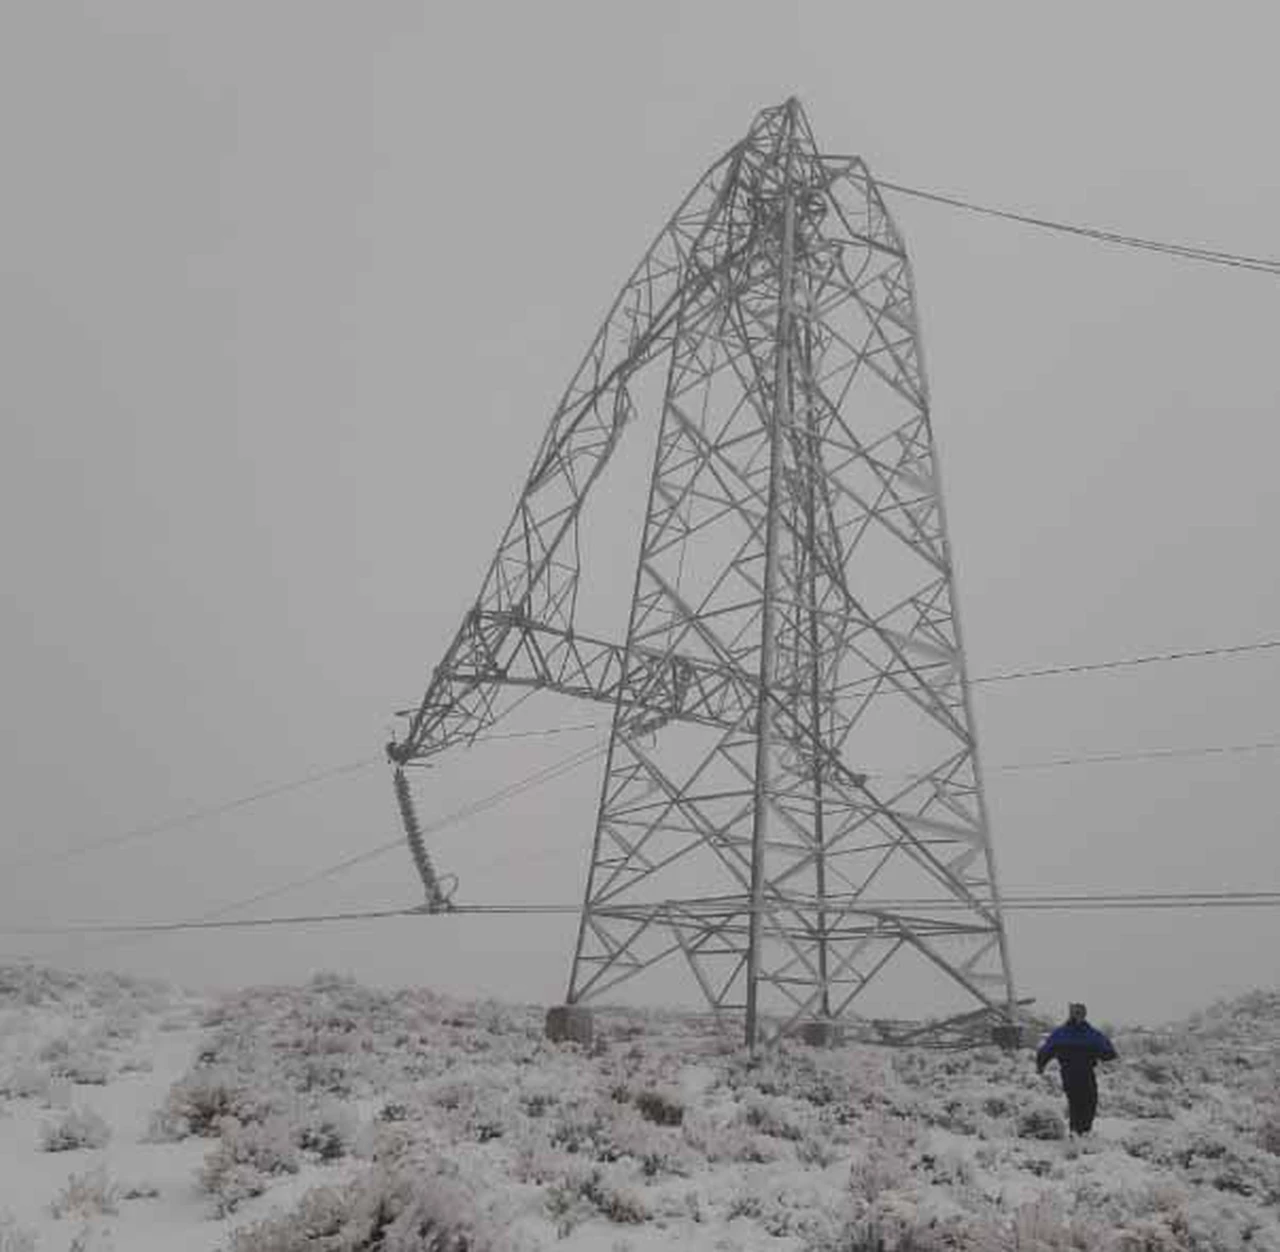 Empresas de telecomunicaciones corren contra reloj para mantener la conectividad por las nevadas y caídas de torres de energía